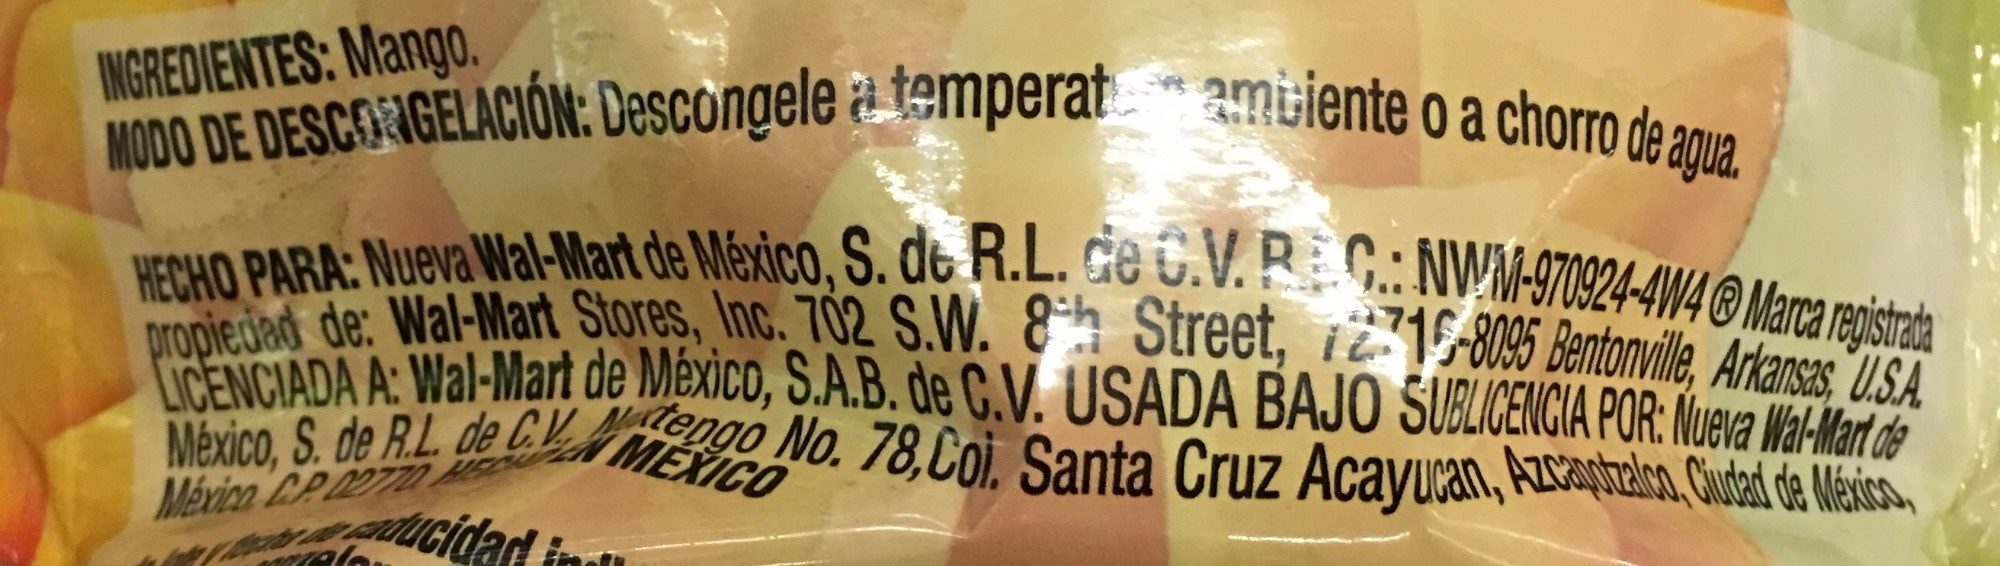 MANGO CONGELADO EN CUBOS - Ingredientes